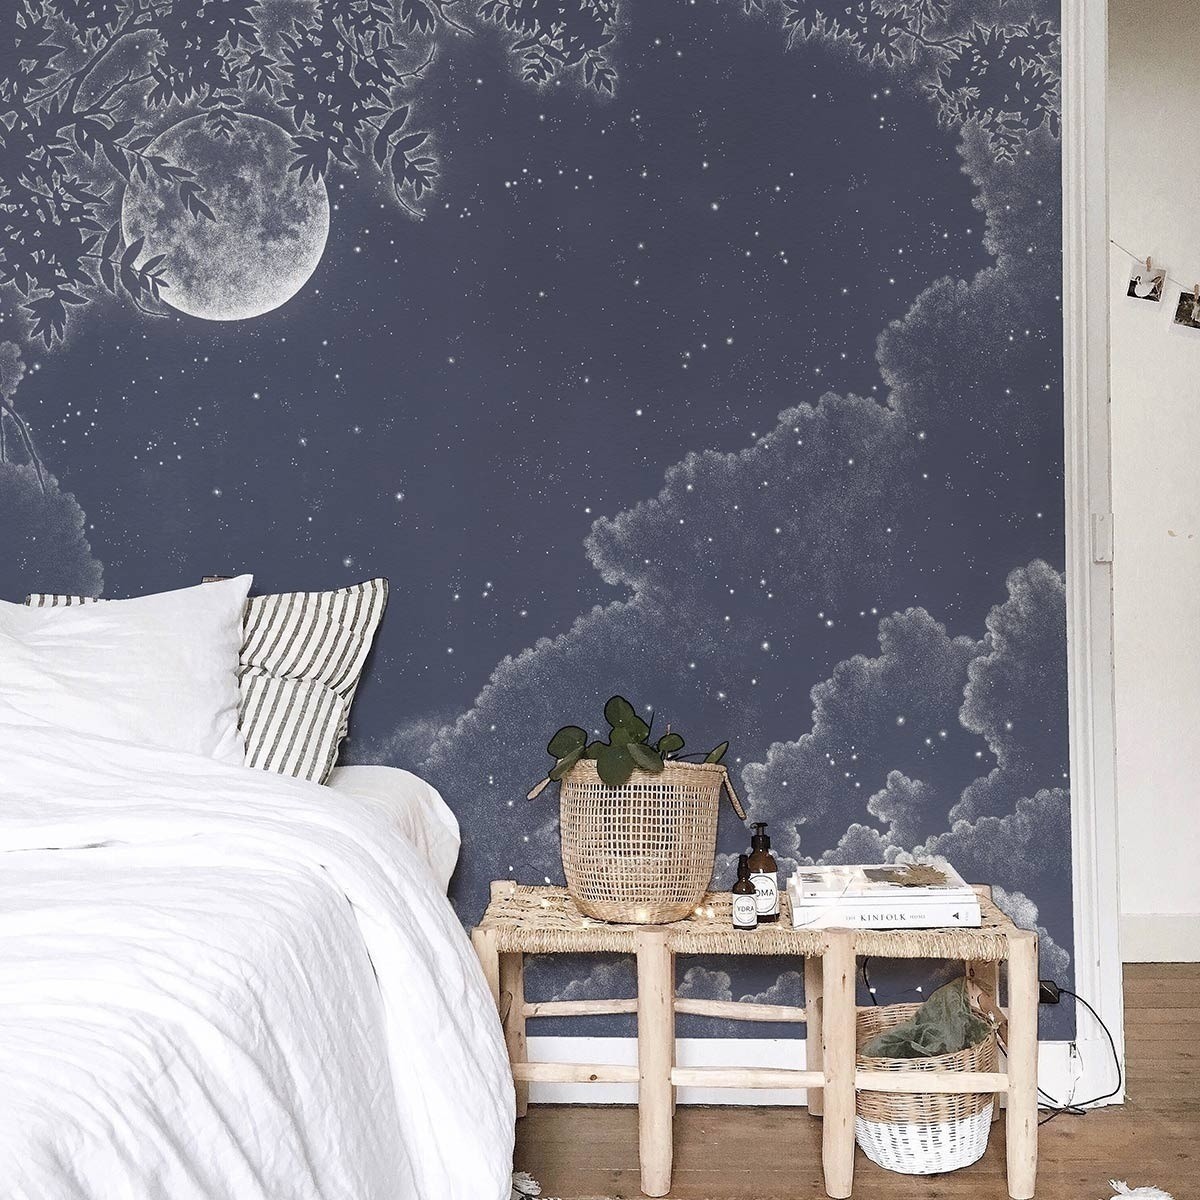 Moonlight 法国进口定制全景壁画 地中海 月夜景观图案儿童房壁纸